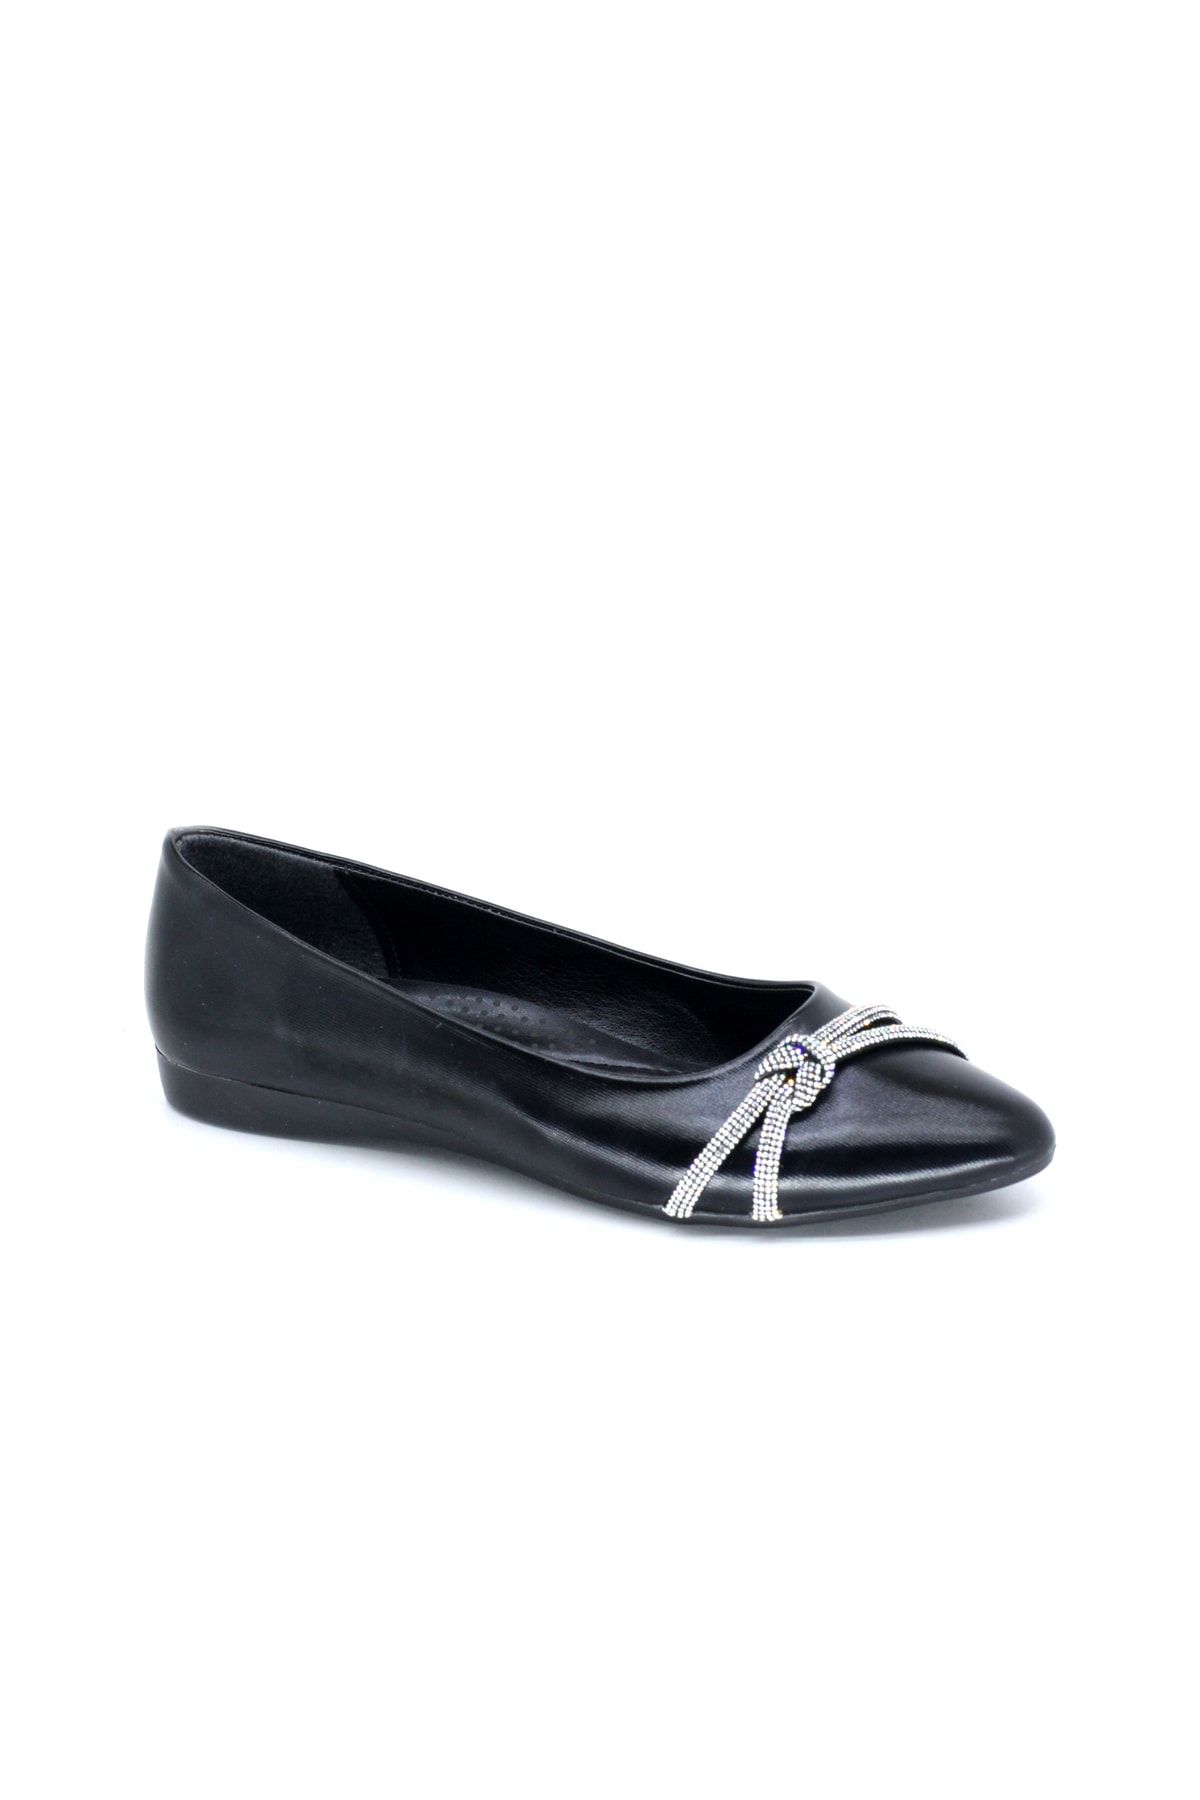 TRENDYSHOES Trendyshose 1987 Rahat Kadın Taşlı Günlük Ayakkabı